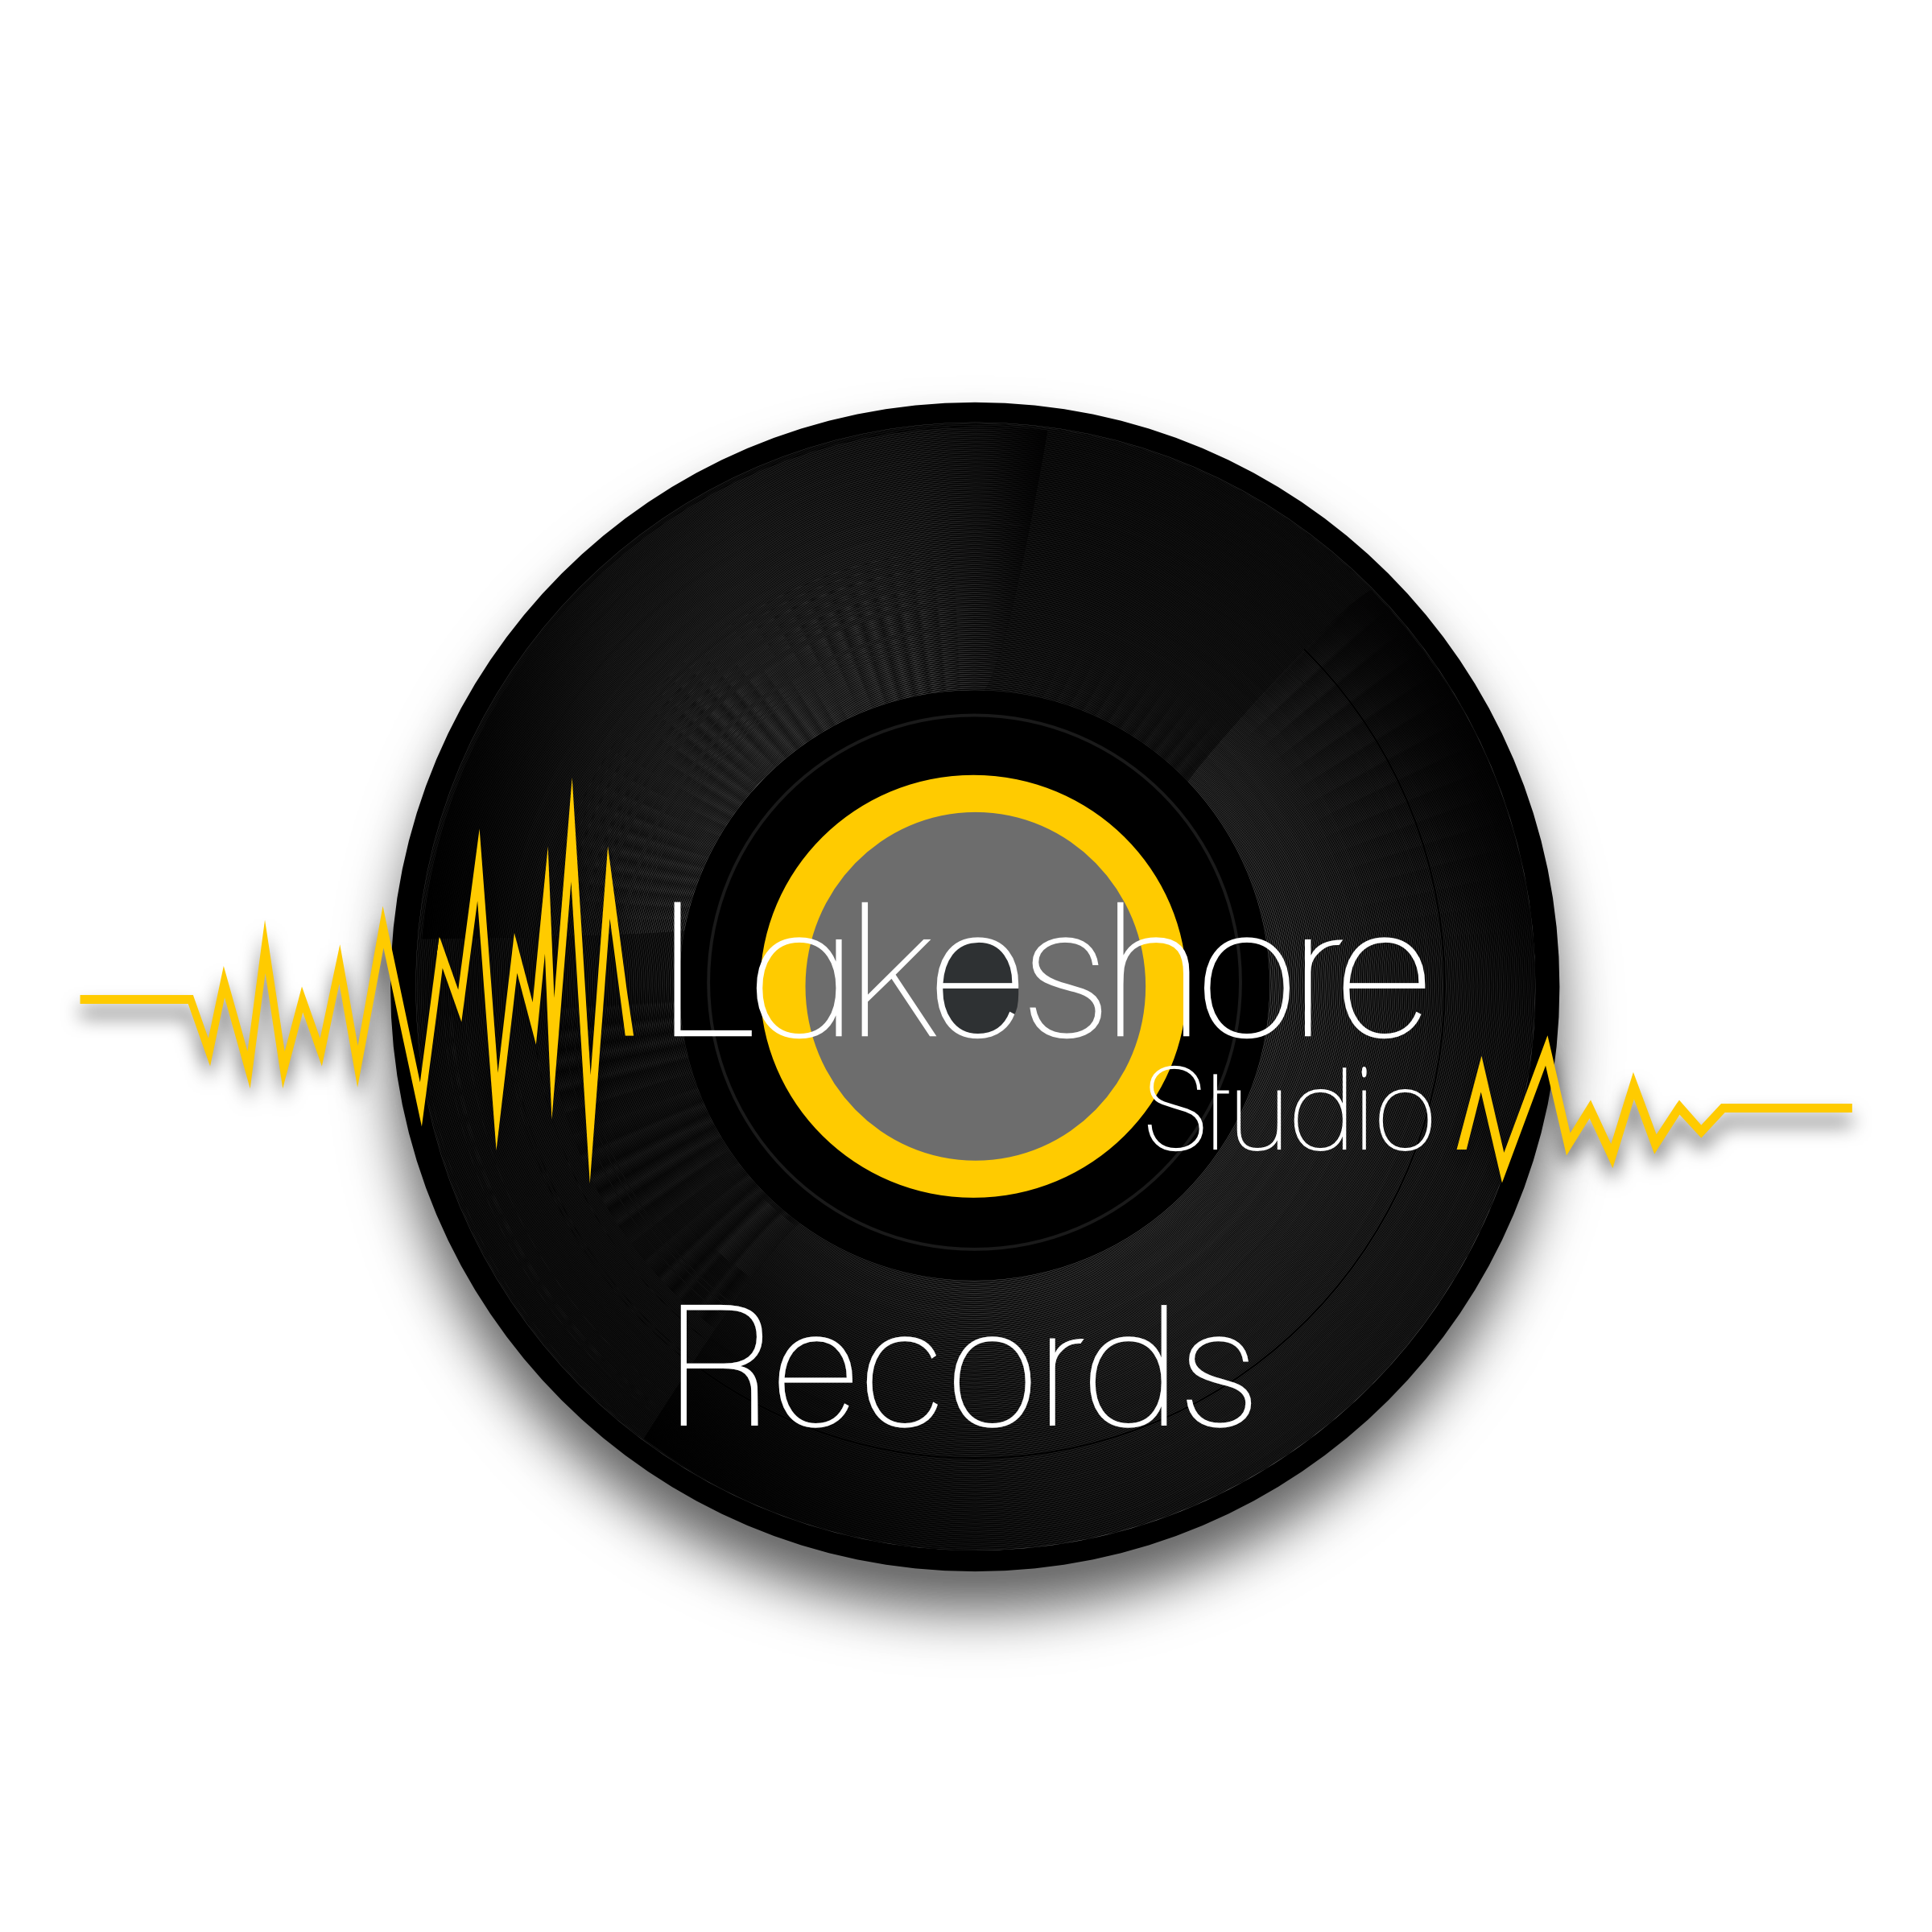 5d9700a691621Logo - Lakeshore Studio Records - Transparent.png